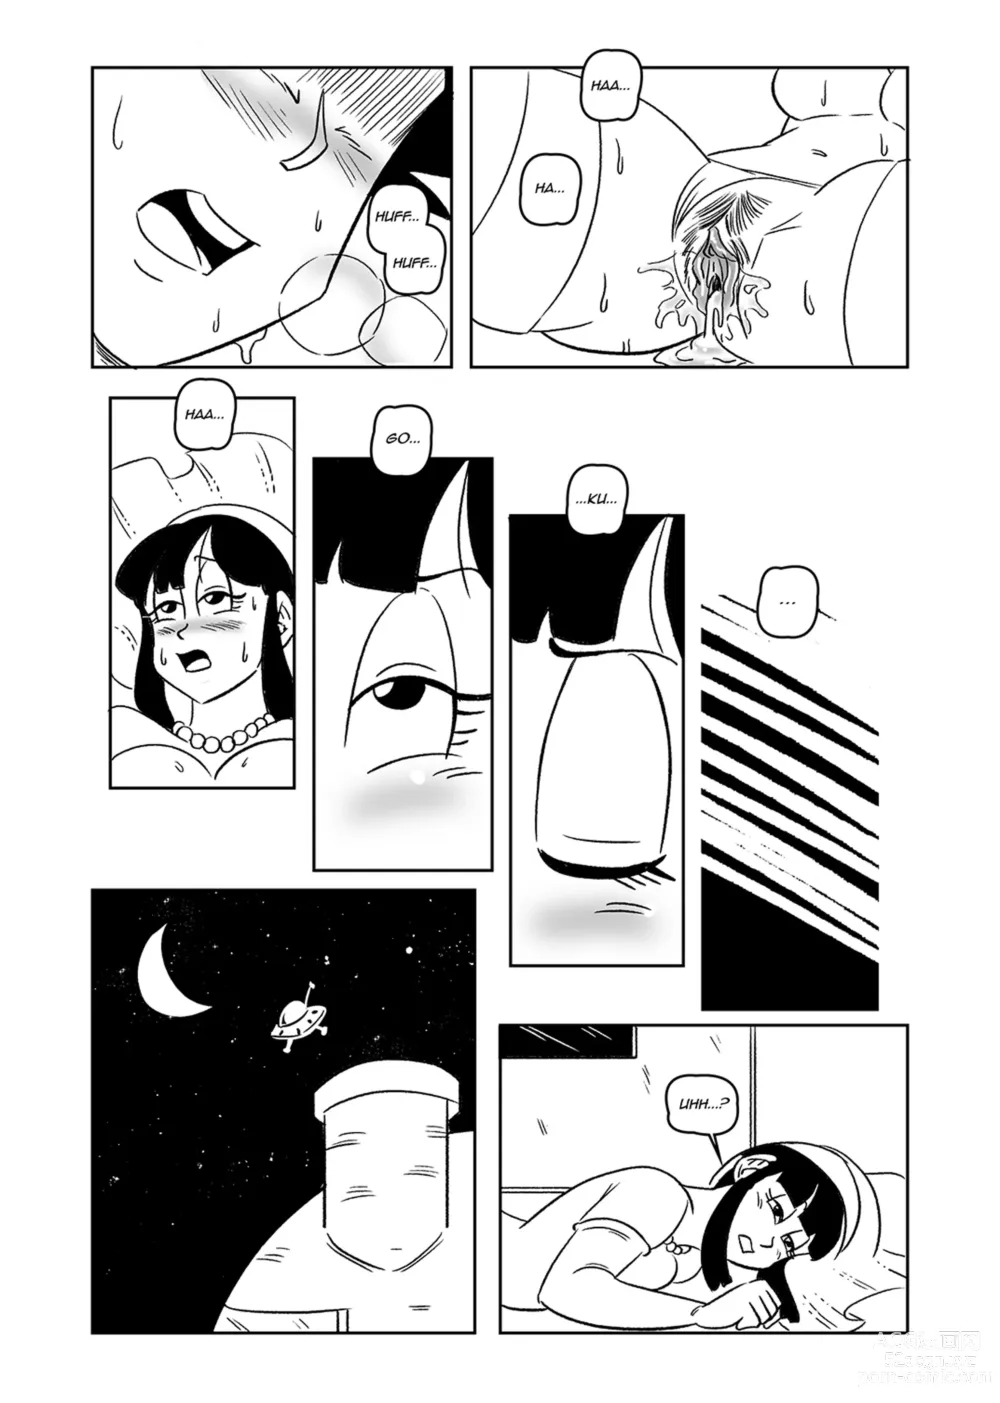 Page 18 of doujinshi weeding night